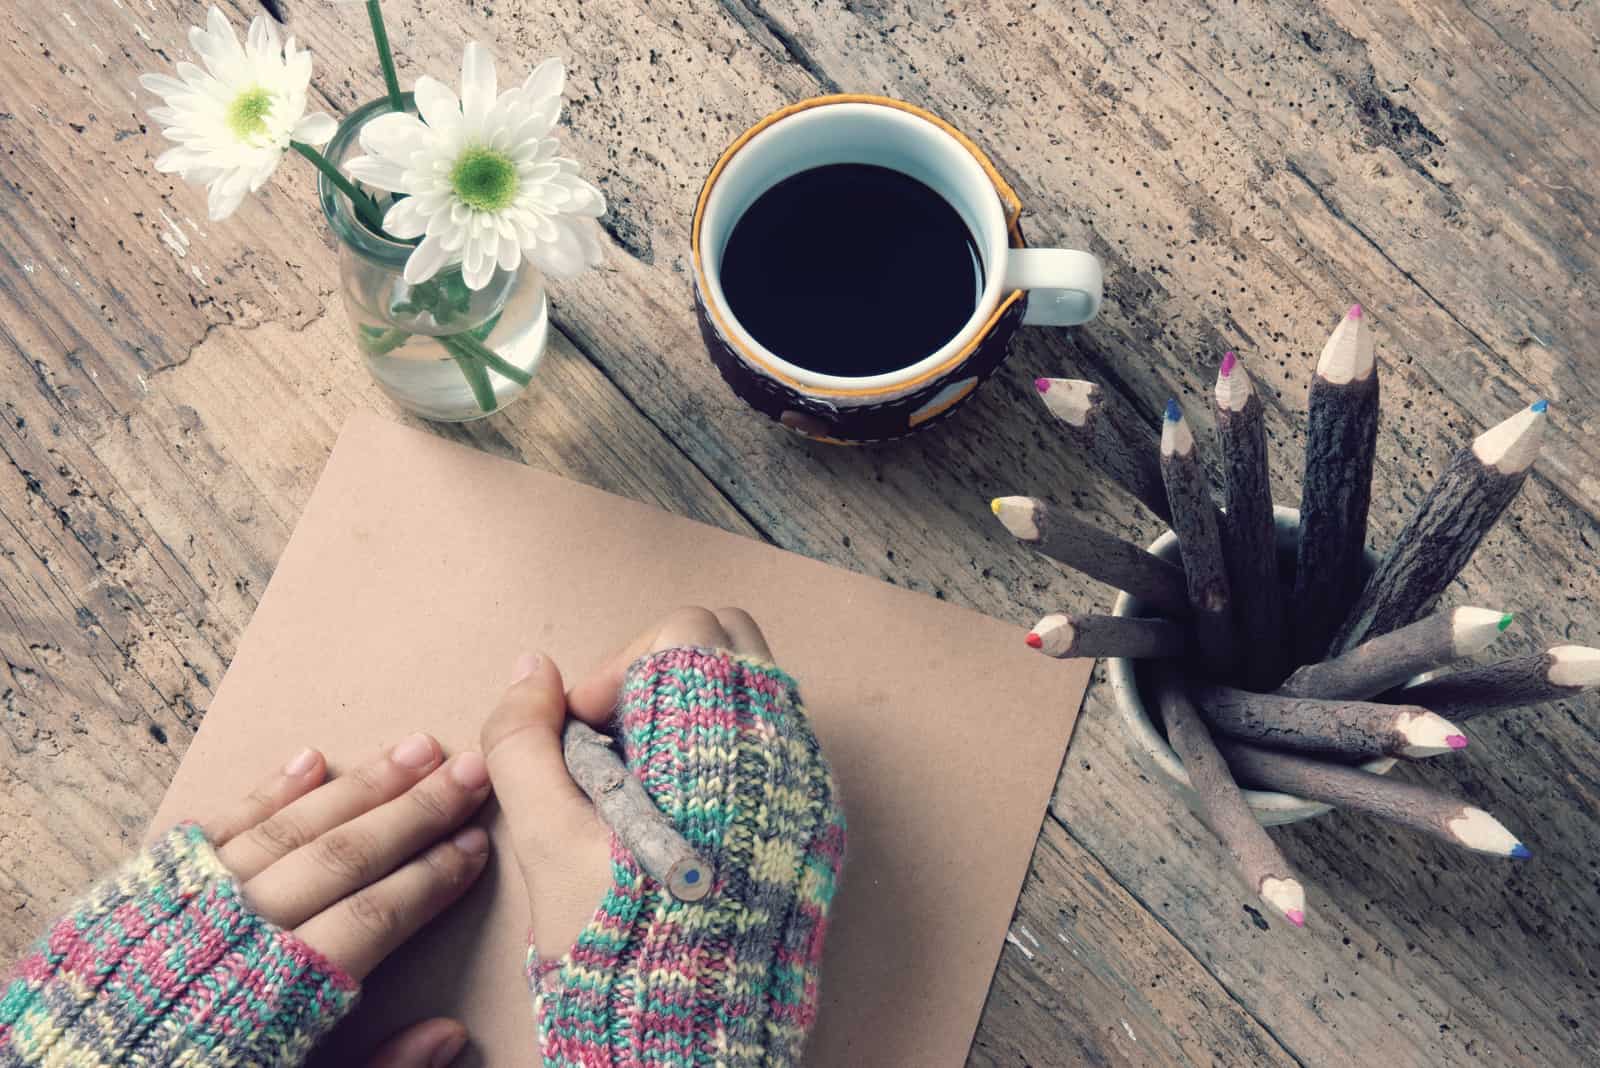 Las mujeres llevan guantes de lana en invierno, escriben cartas para él